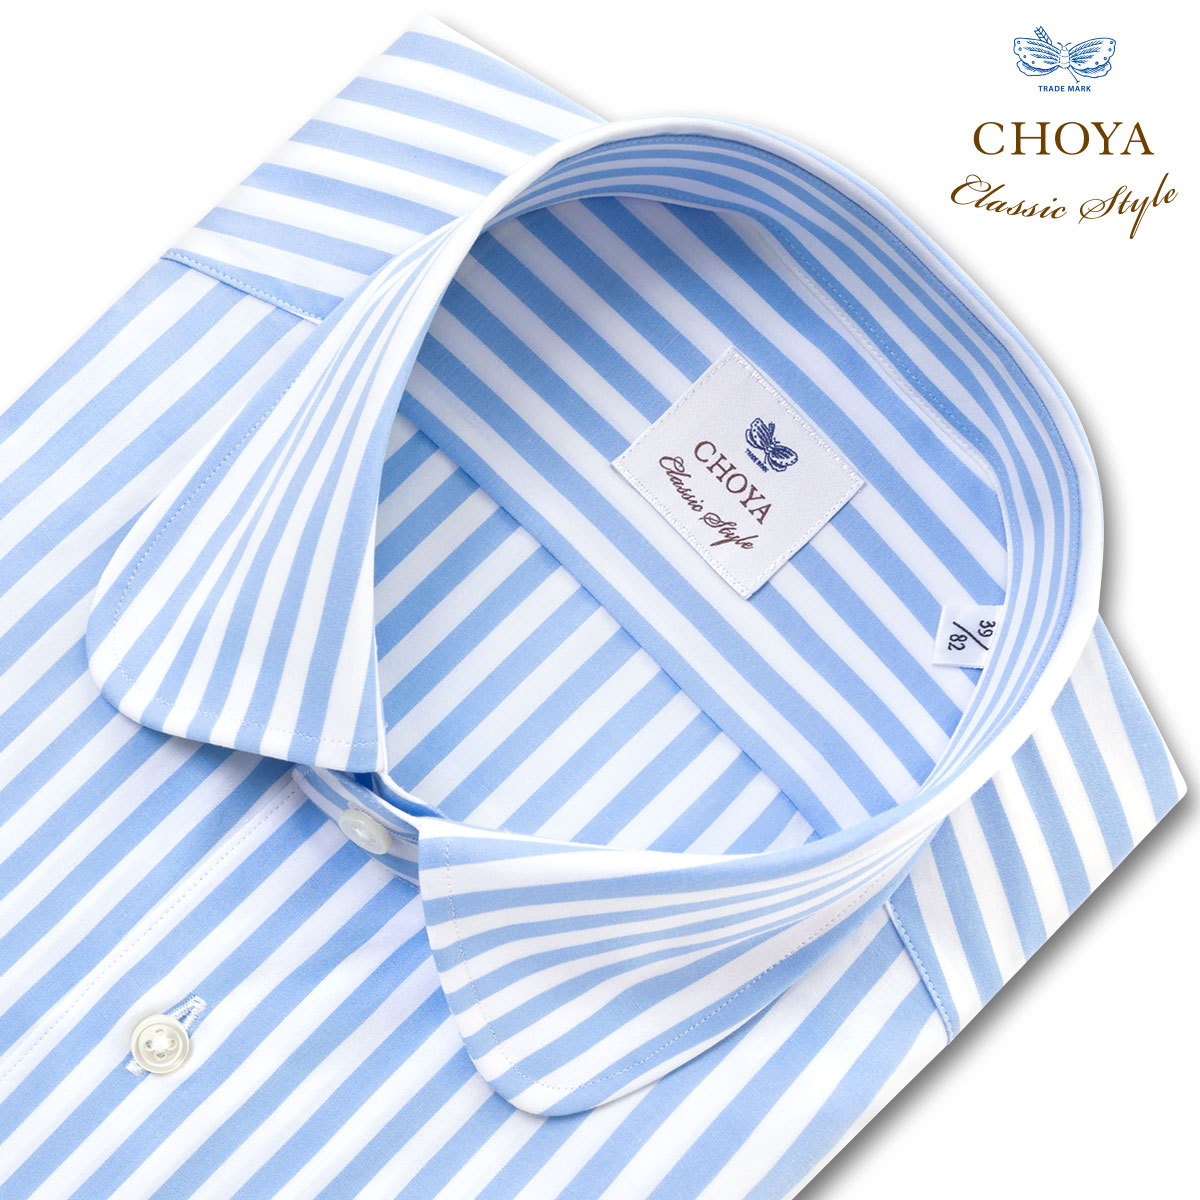 長袖 ワイシャツ メンズ CHOYA Classic Style スリムフィット Yシャツ ブロード スカイブルー ロンドンストライプ ラウンドカラー 綿100% (ccd313-350) 24FA